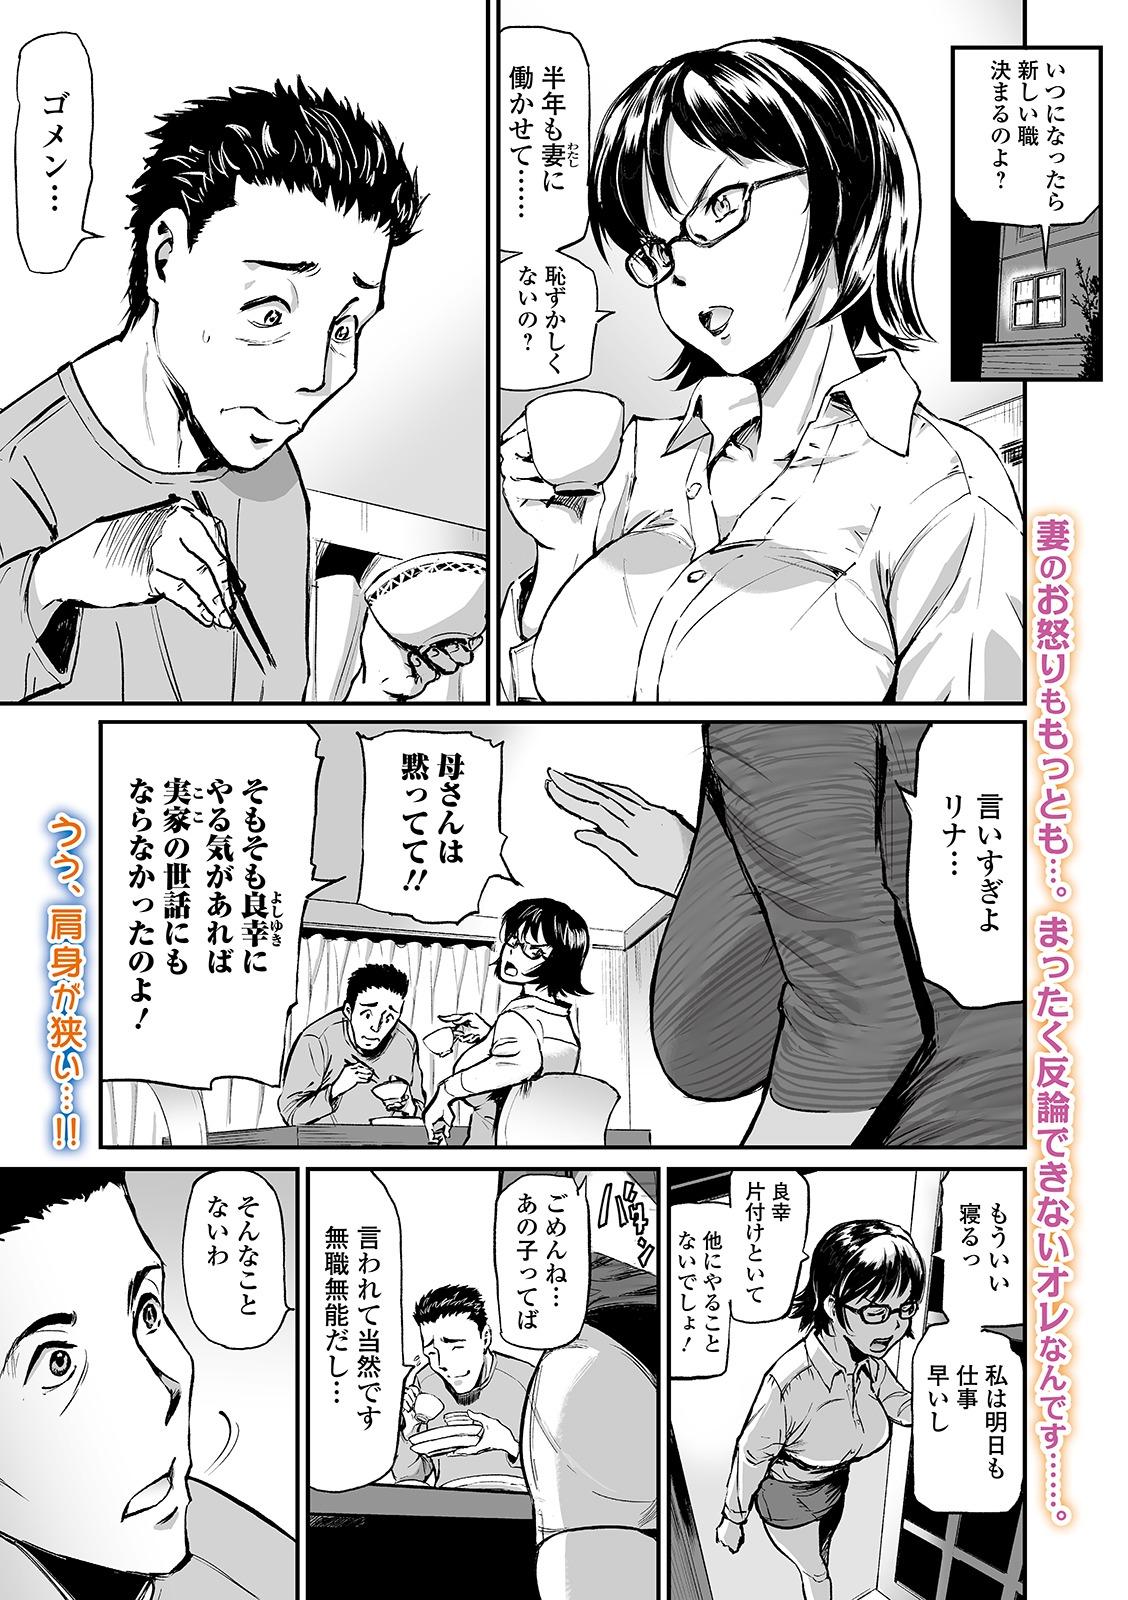 Web Comic Toutetsu Vol. 48 2